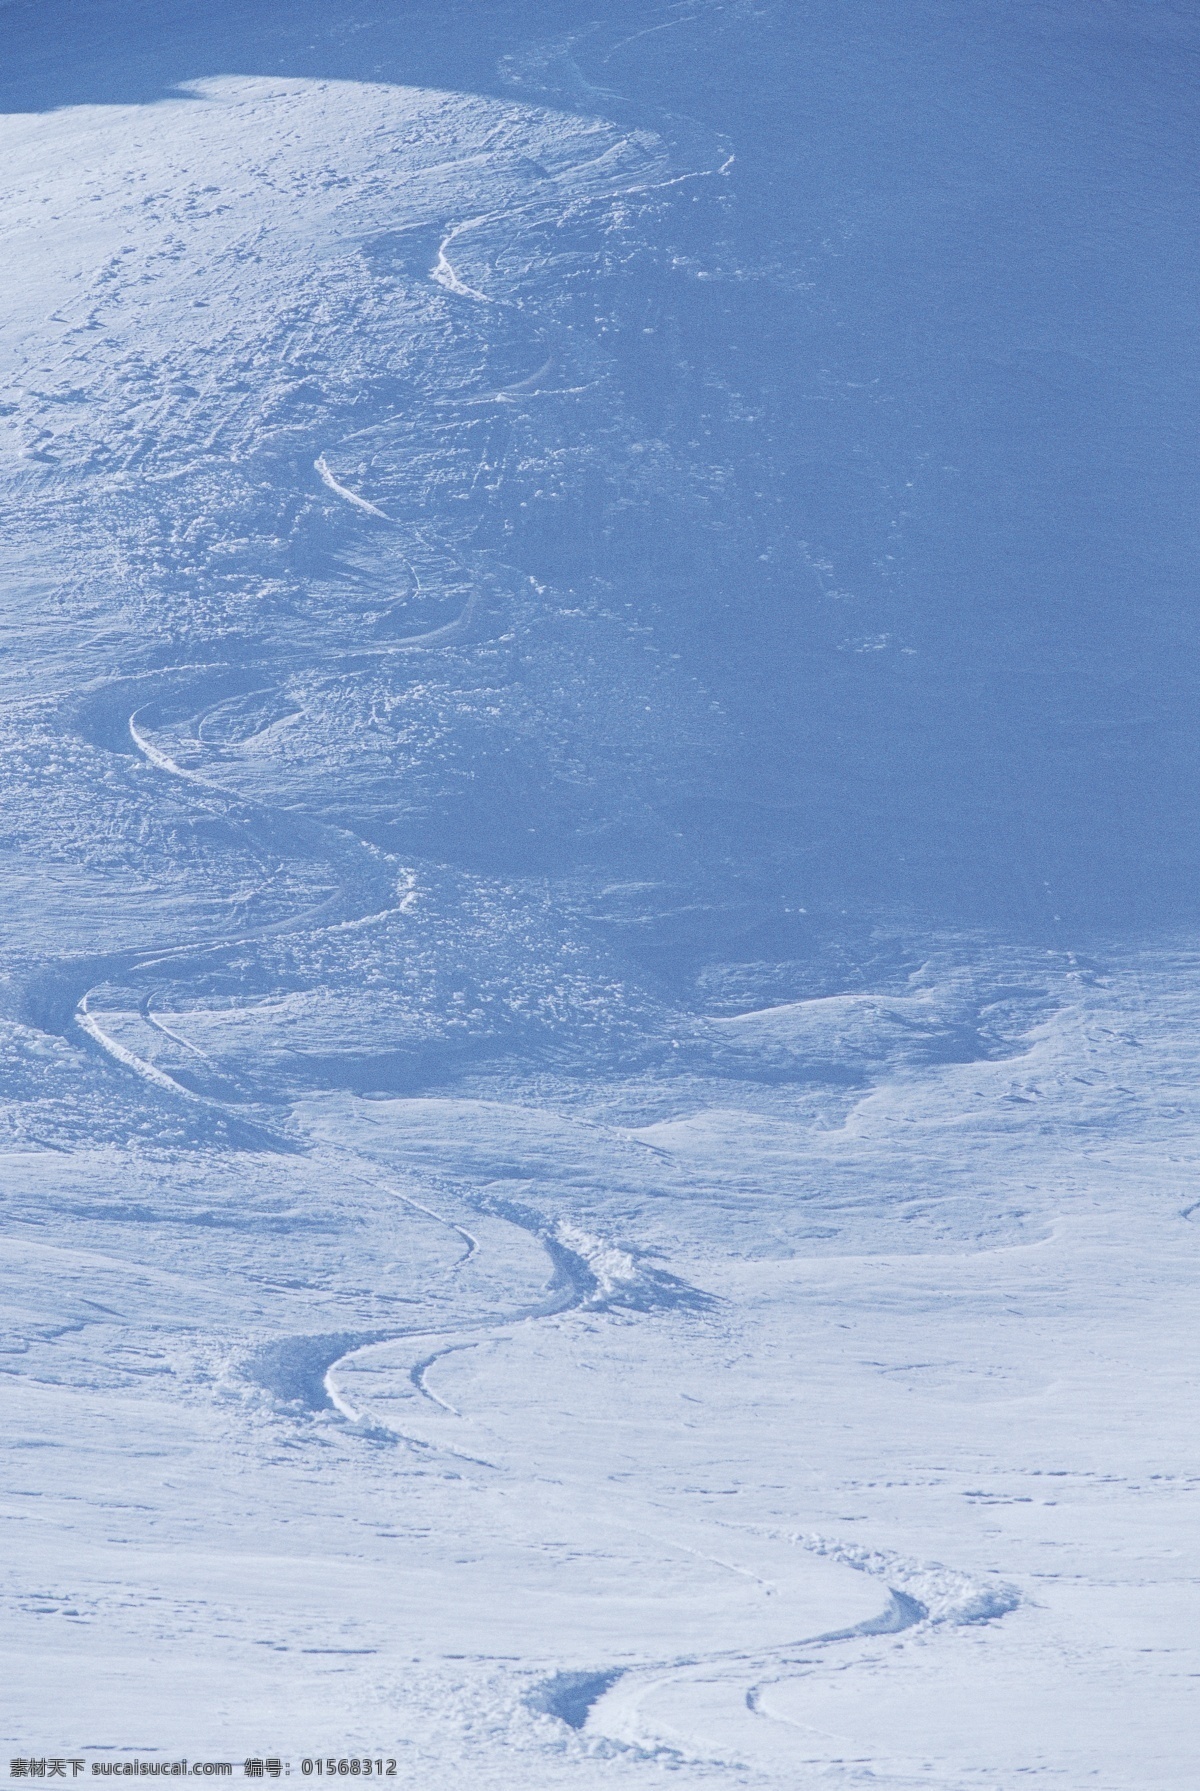 滑雪场 雪地运动 划雪运动 极限运动 体育项目 痕迹 雪山 风景 摄影图片 高清图片 滑雪图片 生活百科